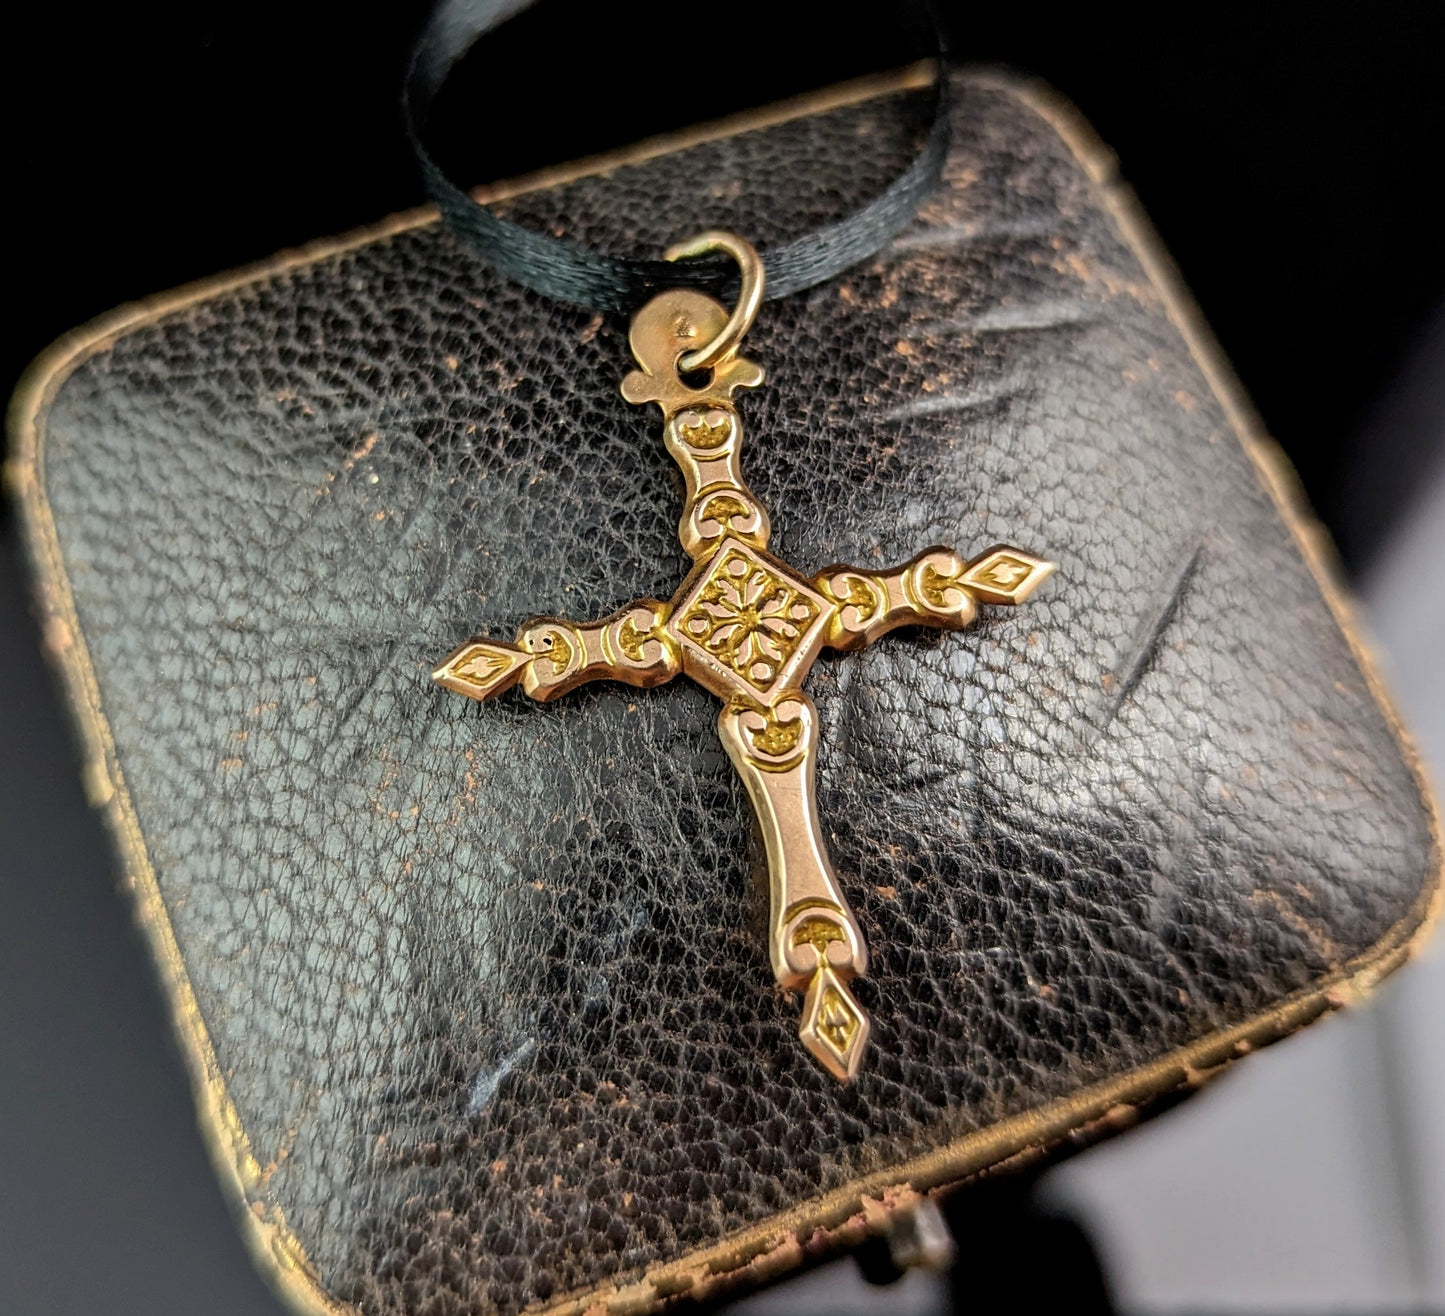 Antique 9ct gold German cross pendant, floral